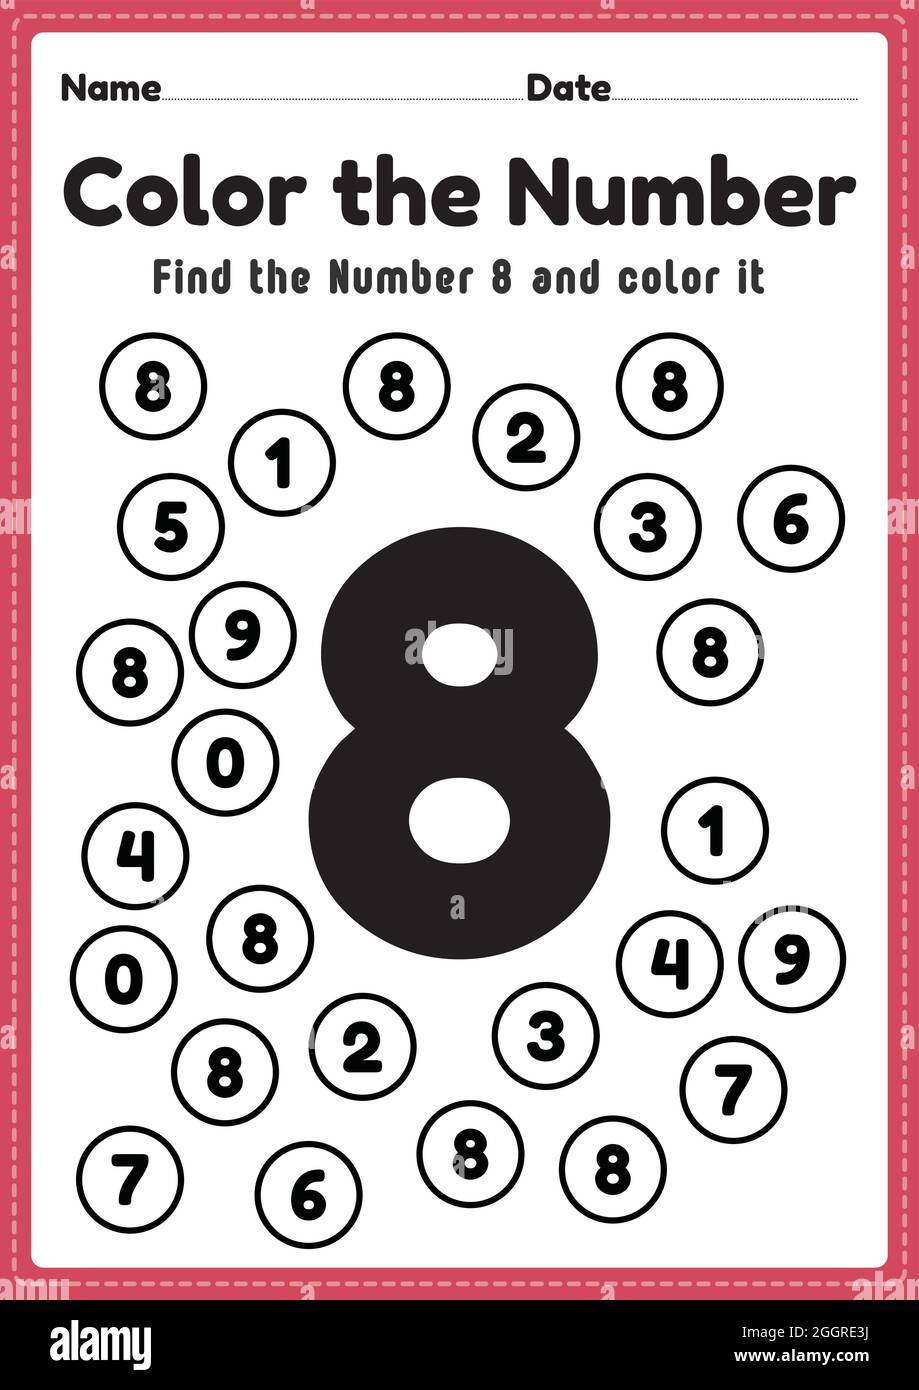 number-worksheets-for-kindergarten-number-8-coloring-math-activities-for-preschool-kids-to